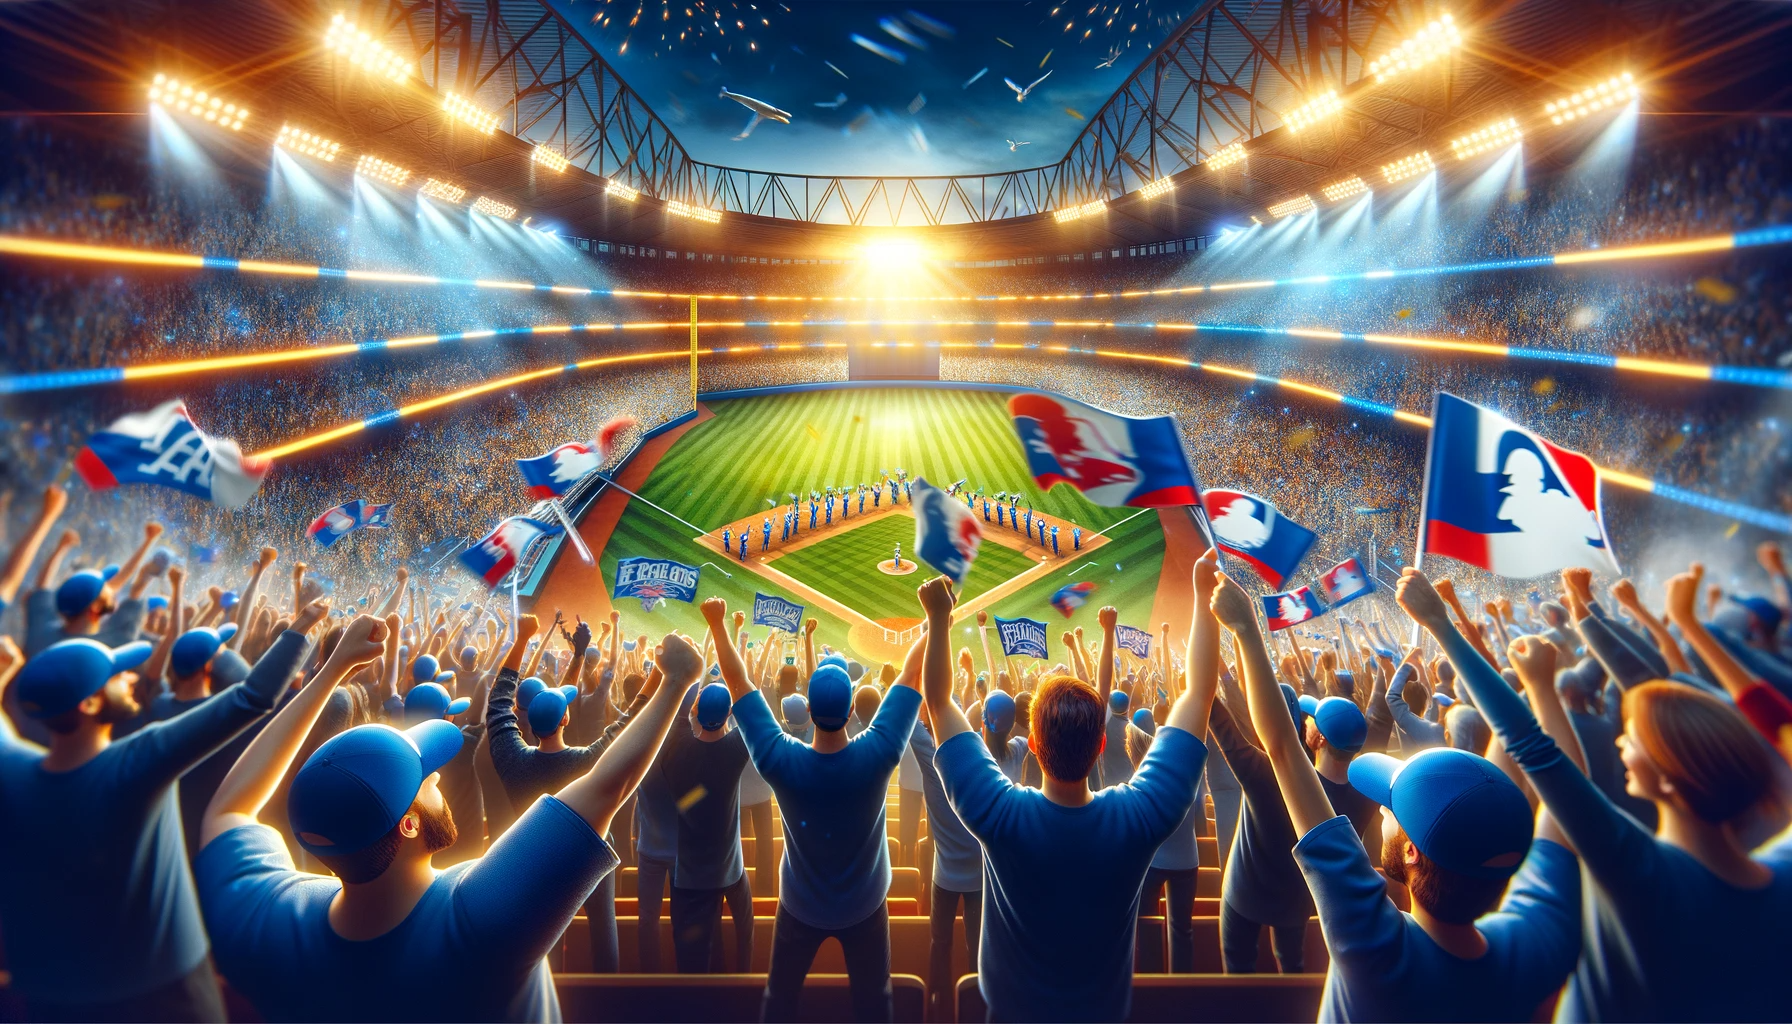 満員のスタジアムで野球の試合が行われている様子。観客は青い帽子をかぶり、白いTシャツを着ており、多くが手にした旗を振っている。スタジアムの照明がピッチを明るく照らし、観客席は活気に満ちている。